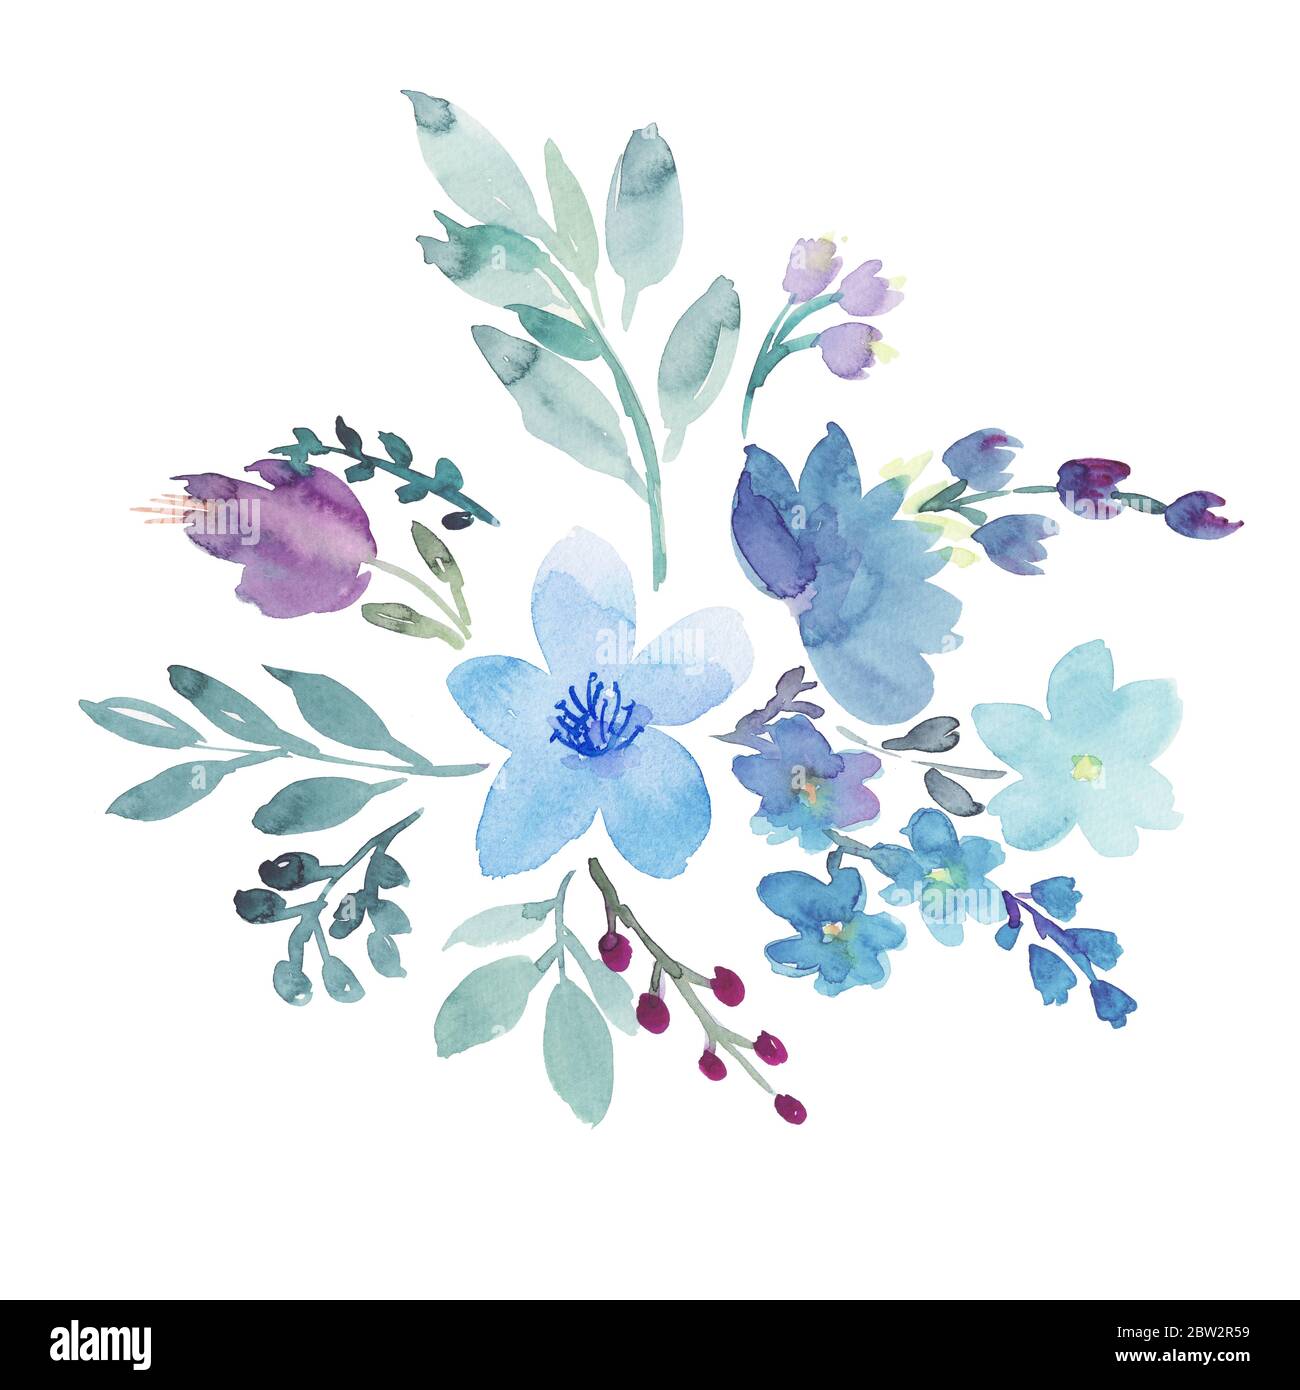 Dessin à la main boho aquarelle illustration florale avec fleurs bleues,  pourpres, baies bleues et feuilles vertes Photo Stock - Alamy